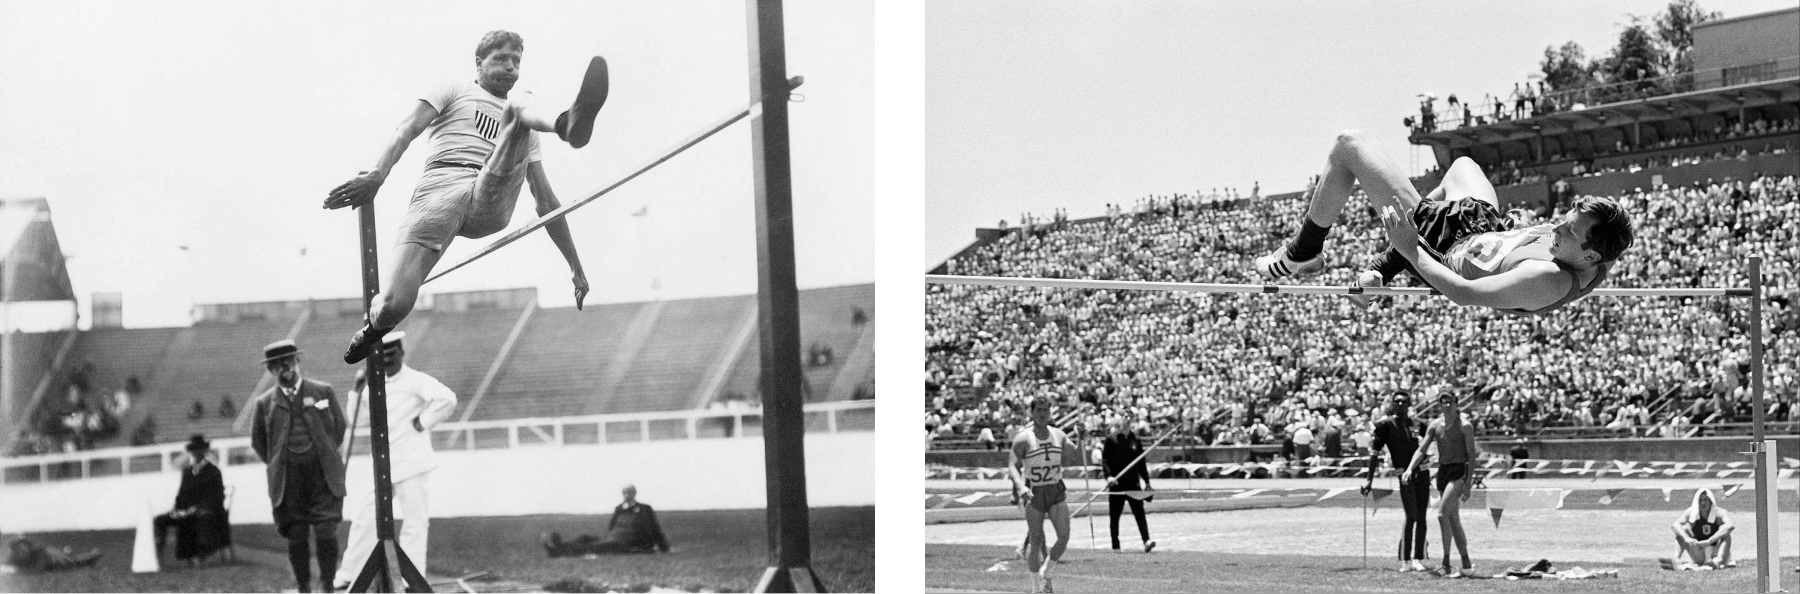 Долгое время прыгуны в высоту преодолевали планку «ножницами», как бы переступая ее (фото слева). Американец Дик Фосбери стал первым в мире прыгать через планку спиной вперед. На фото справа Фосбери совершает прыжок на Олимпийских играх 1968 года в Мехико